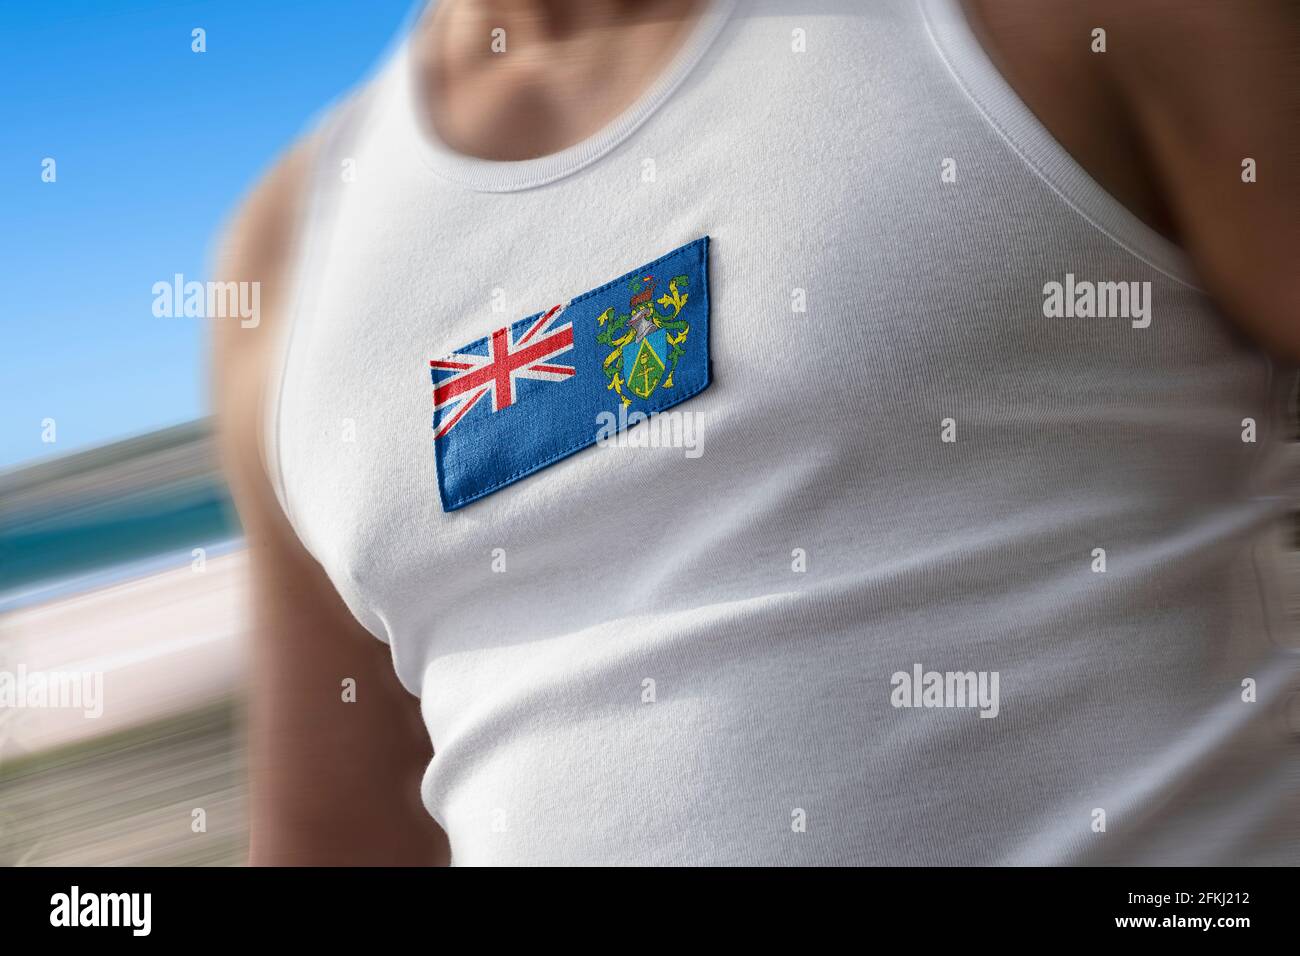 La bandera nacional de las Islas Pitcairn en el pecho del atleta Foto de stock